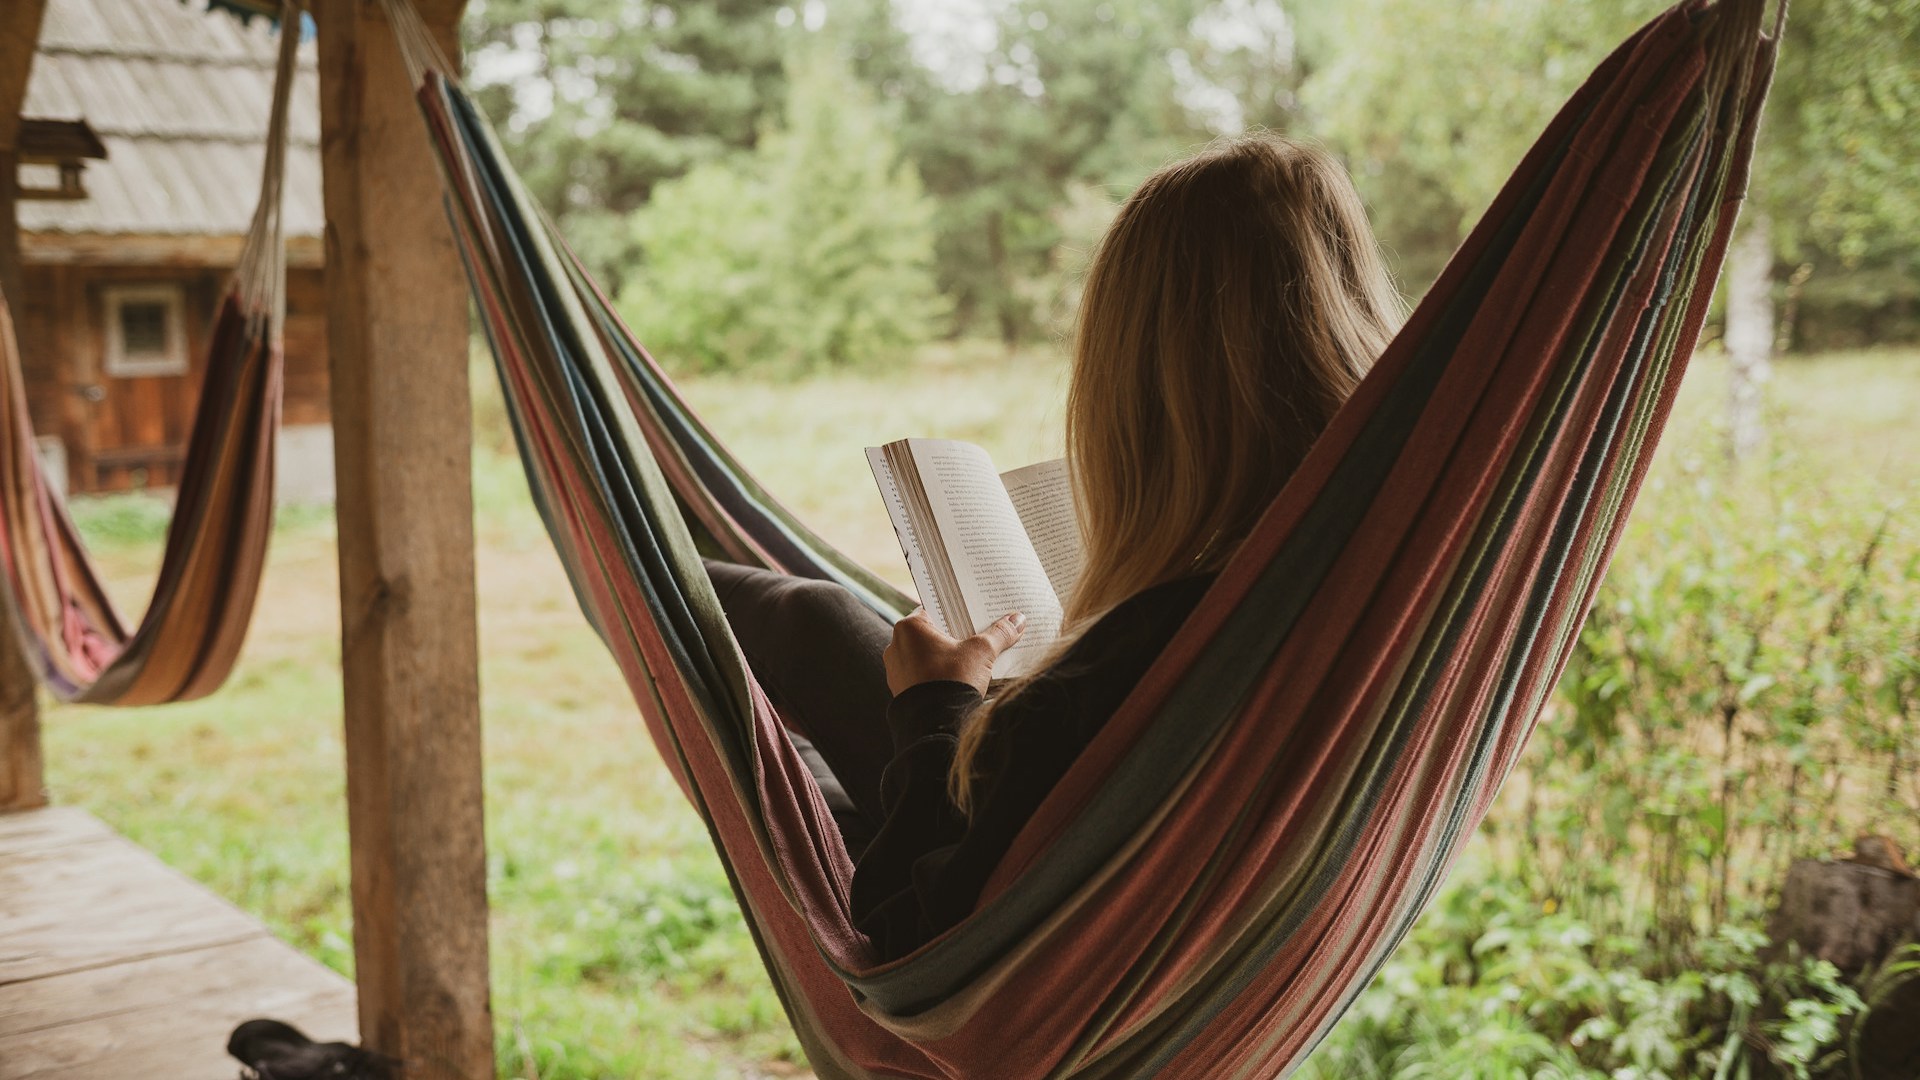 Eine Frau liegt in einer Hängematte, die an einer Holzterrasse zwischen zwei Balken befestigt ist. Sie liest ein Buch und ist von hinten fotografiert, sodass ihr Gesicht nicht sichtbar ist.